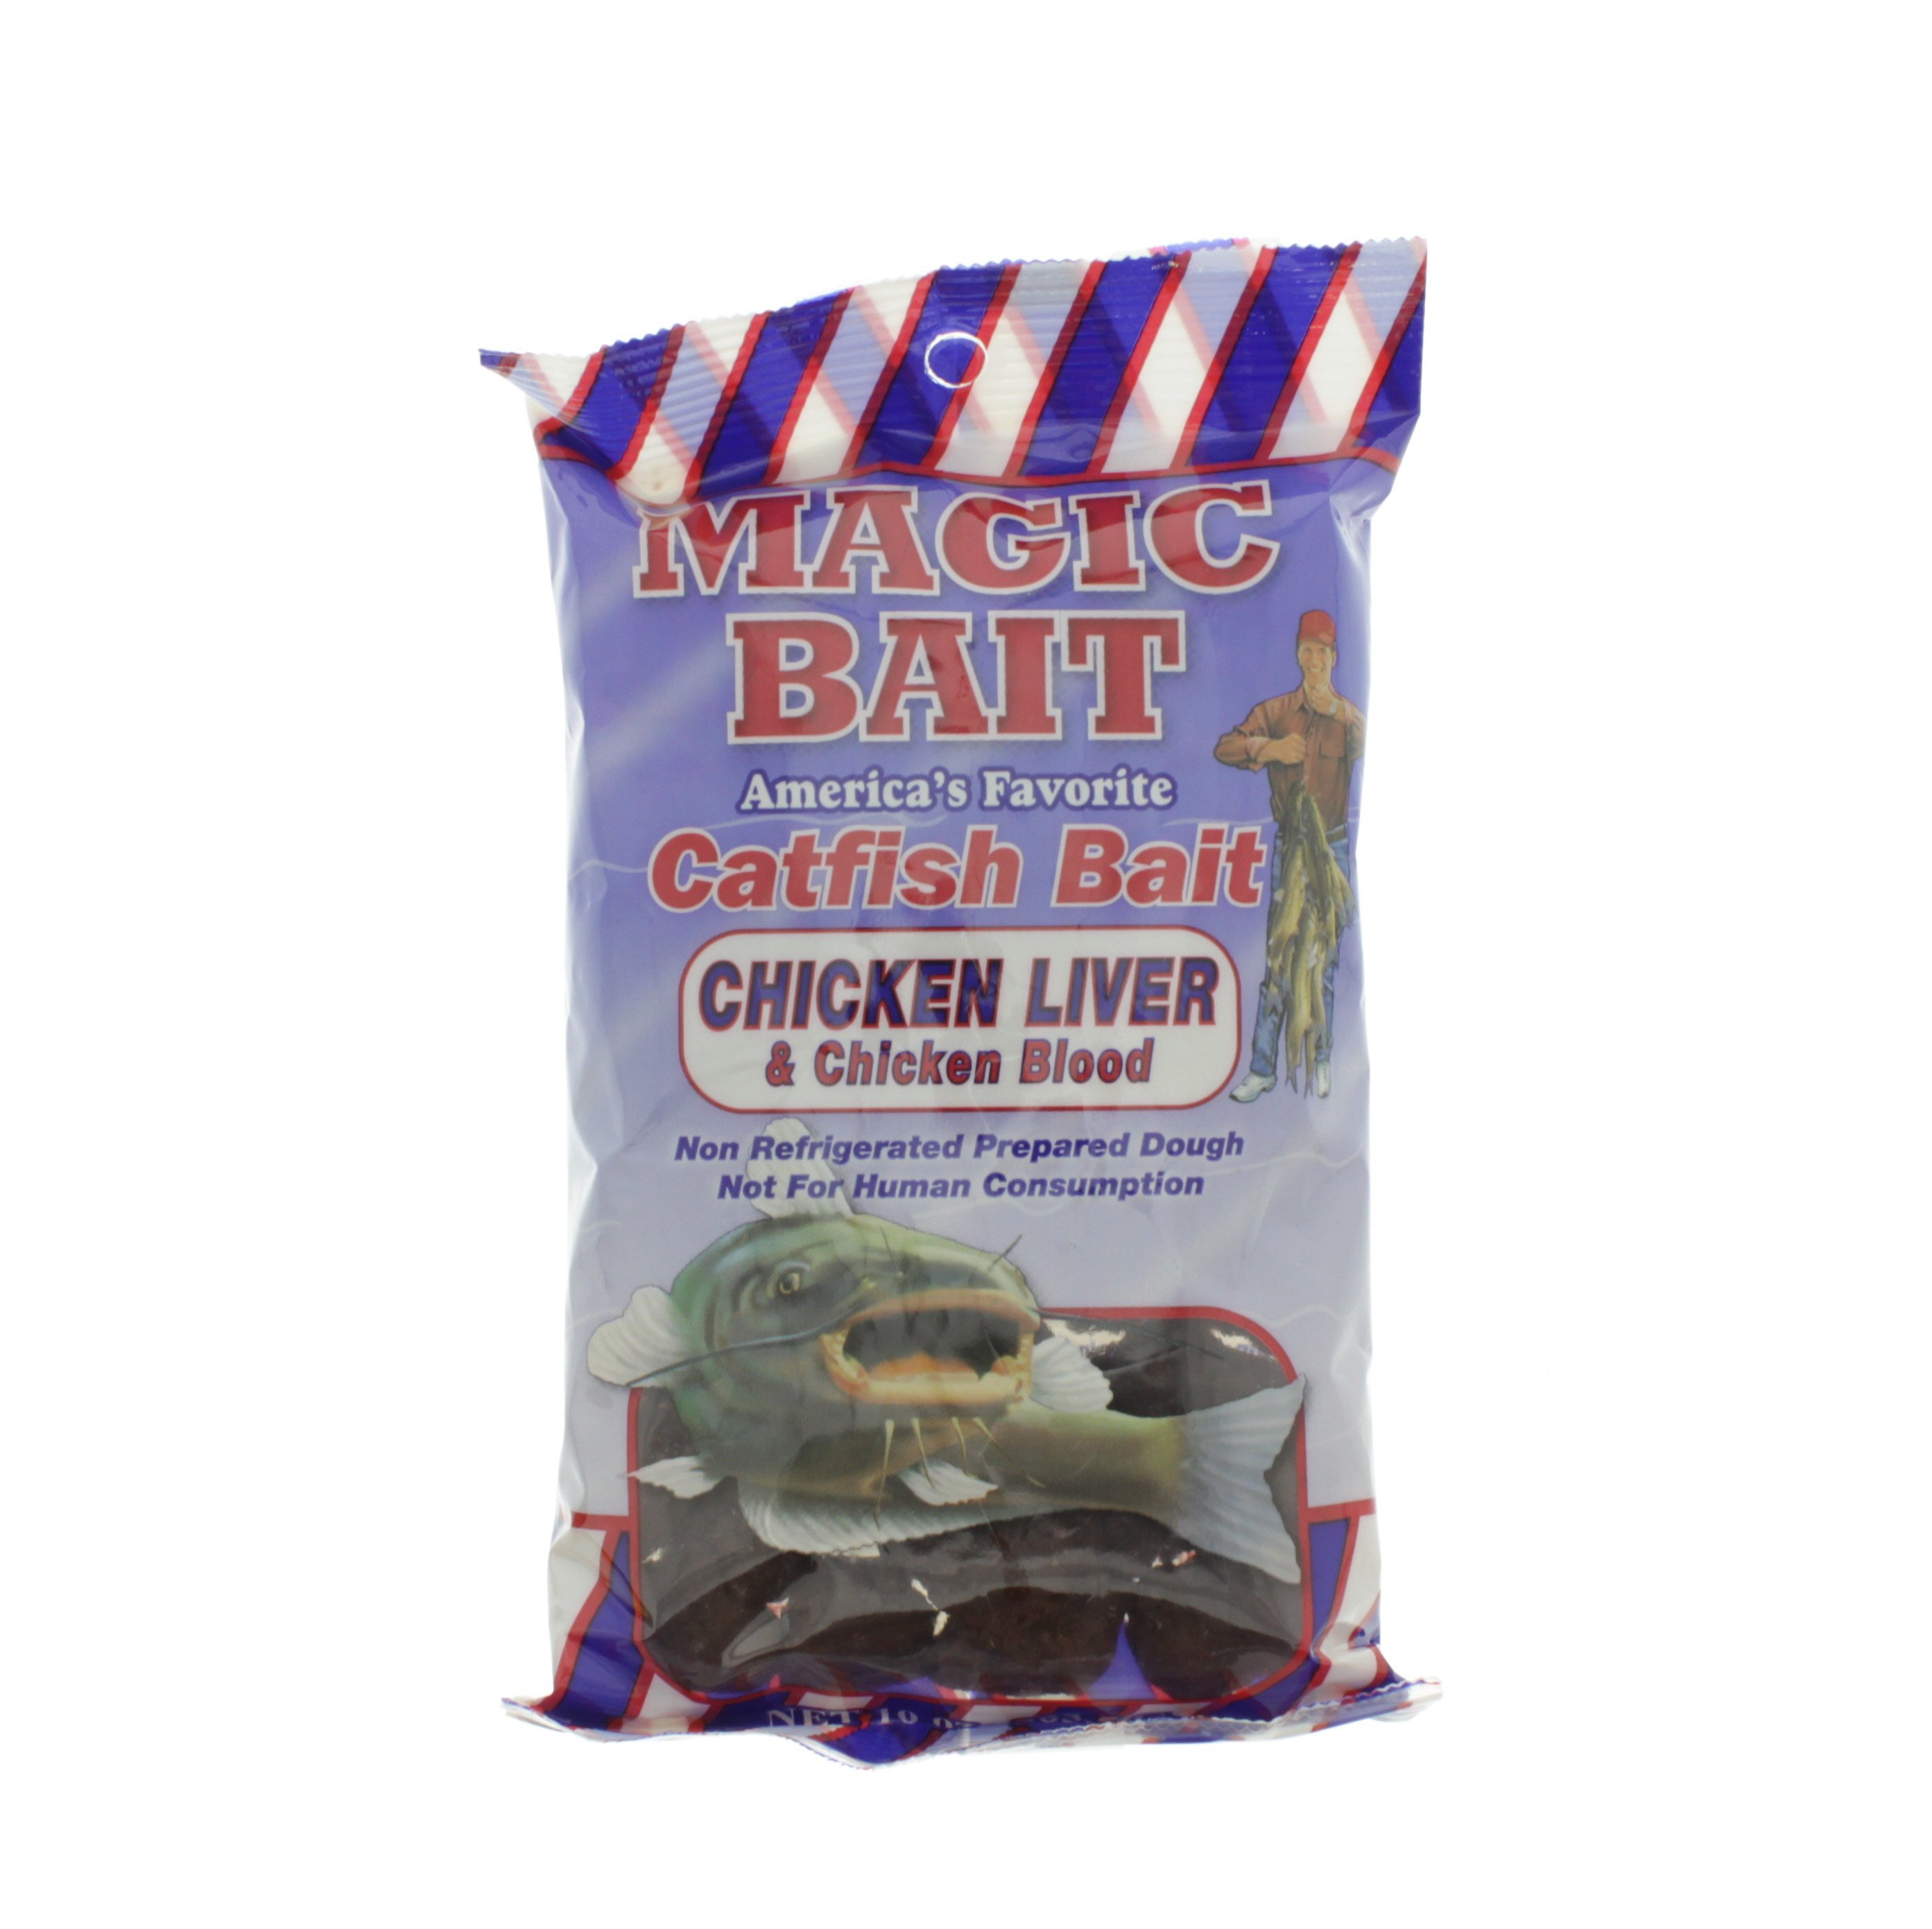 Magic Bait Catfish Bait Chicken Liver & Chicken Blood - Shop